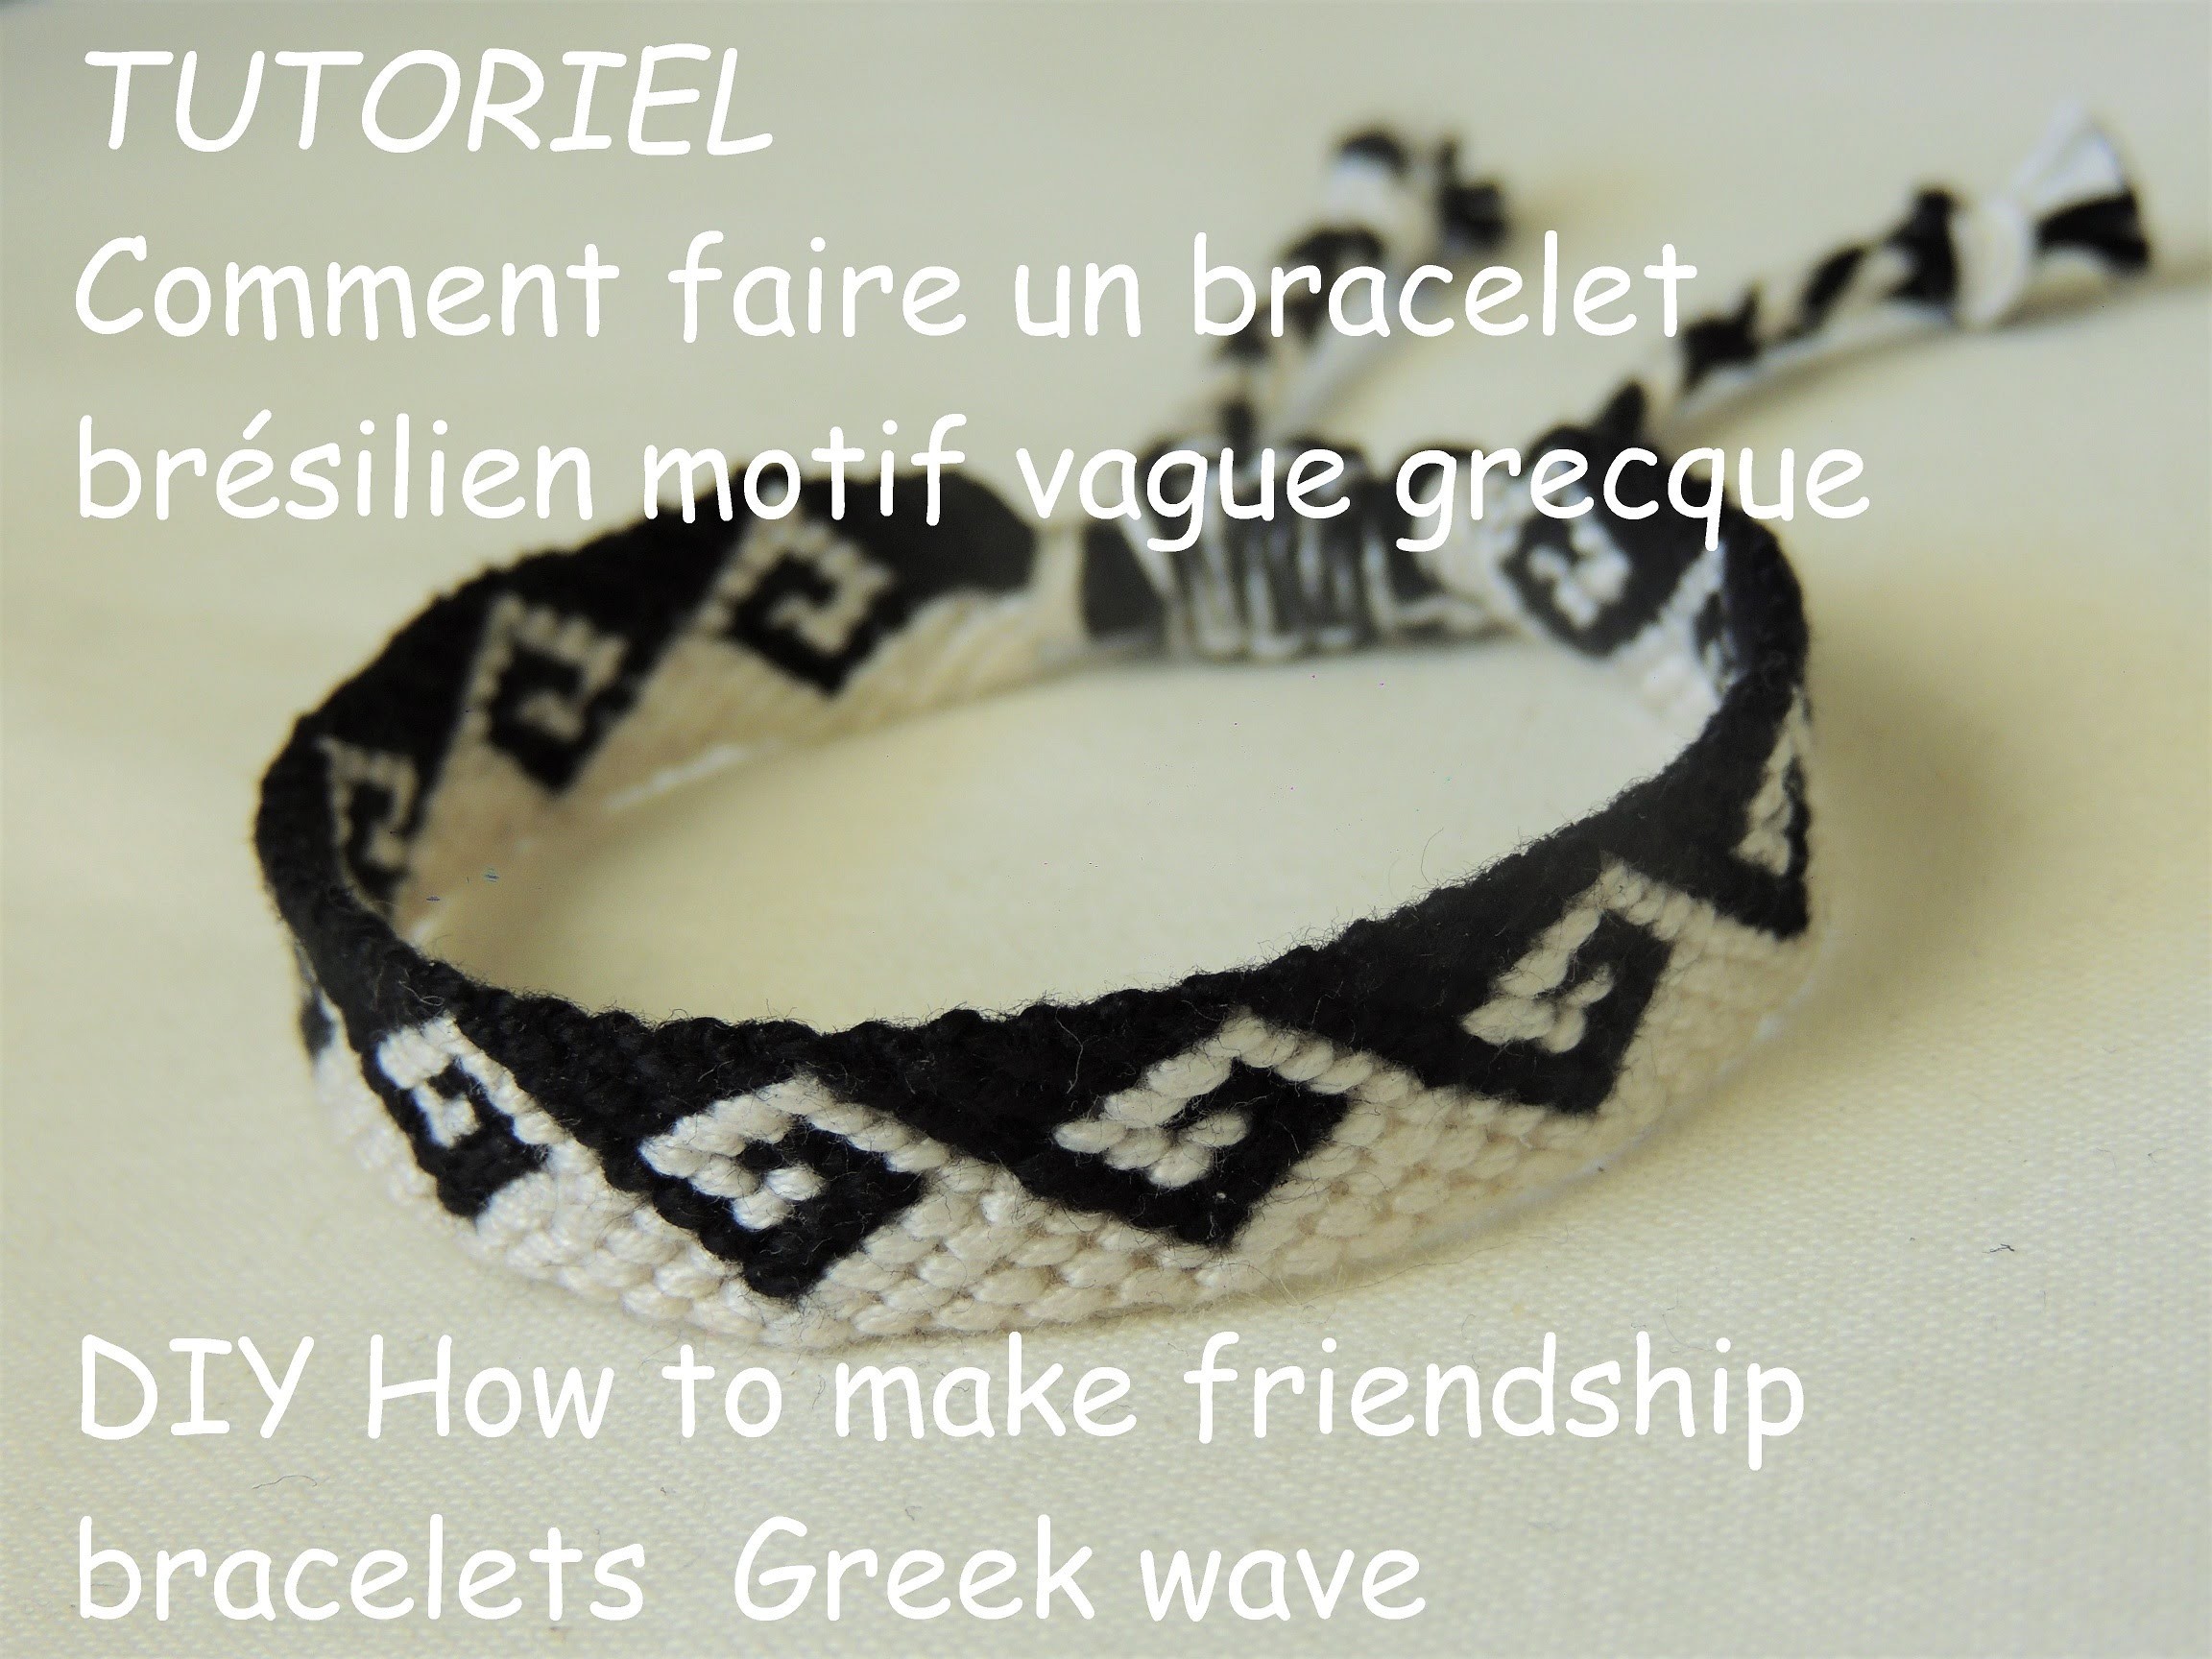 Comment faire une bracelet brésilien vague grecque (DIY how to make friendship bracelets greek wave)